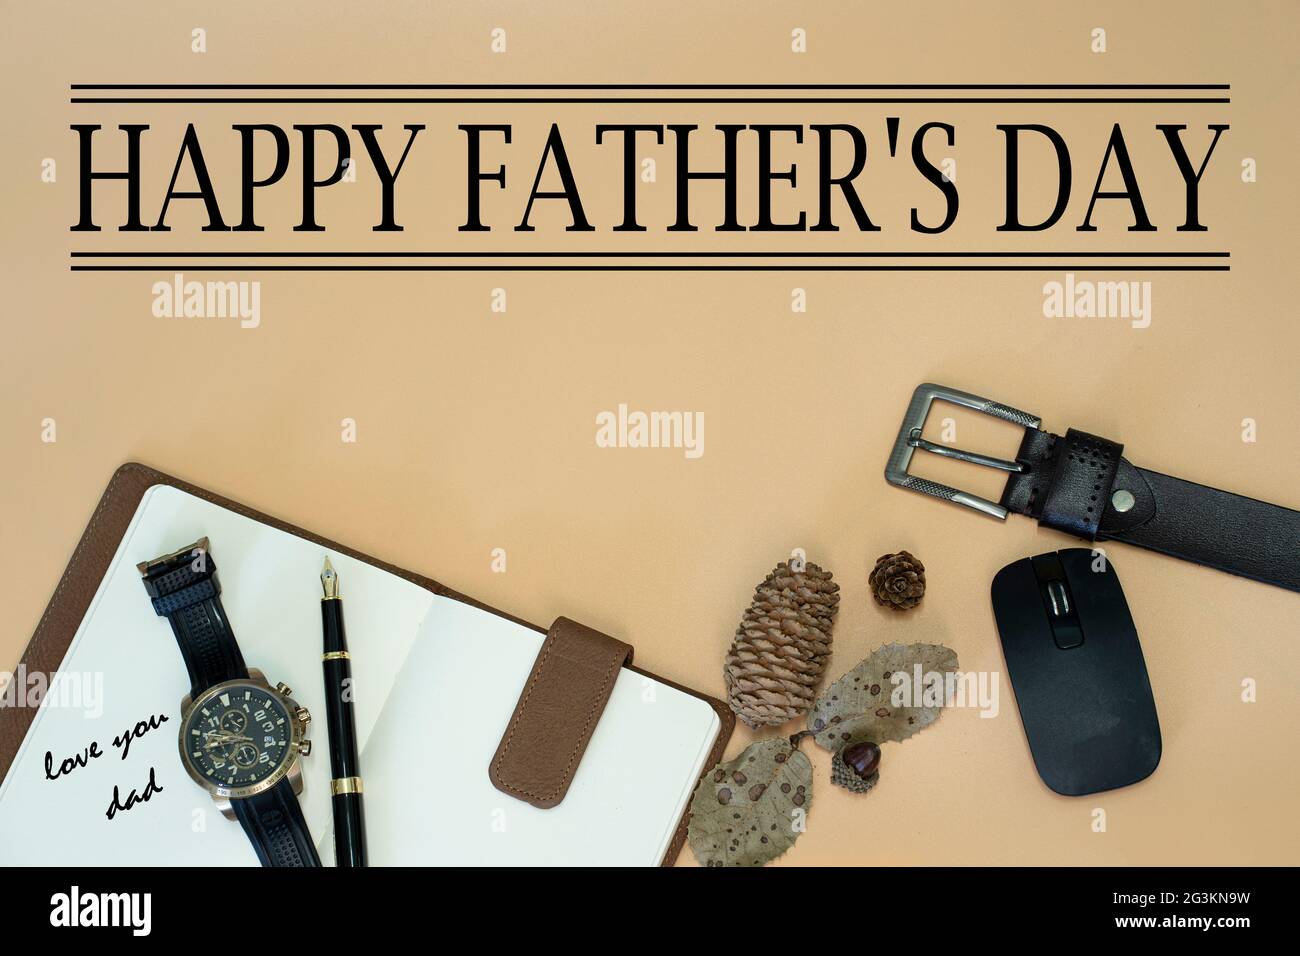 Happy Father's Day Konzept mit Gürtel, Maus, getrockneten Tannenzapfen und -Blättern, Stift, Armbanduhr, Notizbuch und Text. Selektive Fokuspunkte Stockfoto